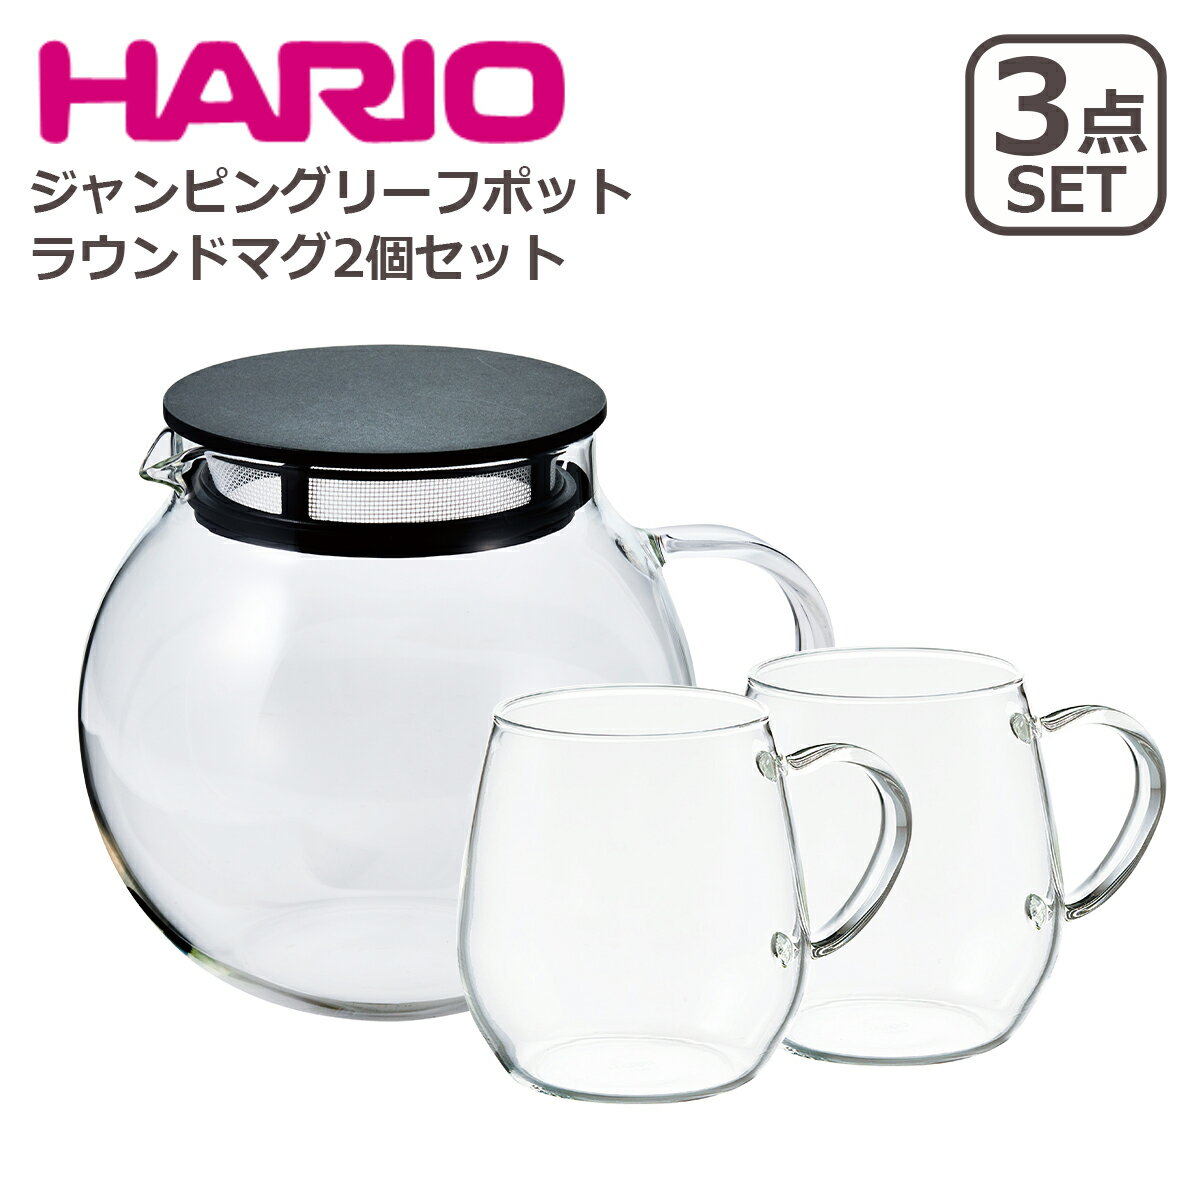 ハリオ（HARIO）商品一覧はこちら＞＞HARIOハリオ 1921年、東京に【HARIO（ハリオ）】の前身である柴田弘製作所を創立しました。長年の研究により業界初の硬質1級ガラス「ハリオガラス」の溶解に成功し、数々の分裂・設立を繰り返し、【HARIO株式会社】を設立しました。耐熱ガラスのほとんどが日本の自社工場で生産され、安心・安全・環境保全のモノ作りを続ける姿勢が高く評価されています。 アイテム ジャンピングリーフポット 600ml（モデルNo.:JPL-60-B）ラウンドマグ2個セット（モデルNo.:RDM-1824） サイズ 【ポット】幅162mm / 奥行き122mm / 高さ123mm 【マグ】幅116 / 奥行き85 / 高さ90mm 容量 【ポット】600ml / 【マグ】360ml 材質 【ポット】ガラス本体：耐熱ガラス（耐熱温度差：120℃）/ フタ・フィルター：ポリプロピレン / パッキン：シリコーンゴム 【マグ】耐熱ガラス 商品詳細 【ポット】 ・茶葉がジャンピングしやすい丸い形のガラス製ポット ・フタとフィルターが一体だからそのまま注げる ・フタをしたまま電子レンジもOK 【マグ】 ・ホットでもアイスでも楽しめる耐熱ガラスのマグカップ ・スープやミルクの温めにもオススメ ・見た目も可愛いコロンとしたフォルム お取り扱いについて ・転倒や落下、急激な温度変化などで破損する可能性がございます。ガラス製品になりますので、お取り扱いには十分にお気を付けください ・材質の特質上ガラスの内部に小さな気泡や、極微小な黒点が含まれる場合、縁の歪み等ある場合がございますが、これらはガラス製品全般に見られる特徴であり不良ではございません。ご了承ください 商品について ・空焚きをしないでください（ジャンピングリーフポット） ・ご使用前に、取扱説明書をお読みください（ジャンピングリーフポット） ・オーブン・直火・IH不可（ラウンドマグ） ・電子レンジ、食器洗い乾燥機で使用できます ・電子レンジ加熱後は、熱くなっています。取扱いにご注意ください ・台所用洗剤とスポンジをお使いください。金属タワシや研磨剤などは傷が付く原因になりますので使用しないでください ・サイズ、製品スペック等は公式発表を基に記載しています ・商品仕様は予告無く変更となる場合がございます、予めご了承下さい ・イメージ画像には、該当商品以外の撮影小物なども写っておりますが、それらの小物は商品には含まれません ・光・画面の設定により、カラーが実際の商品と若干異なることがございます 包装について ギフト包装不可・熨斗対応不可